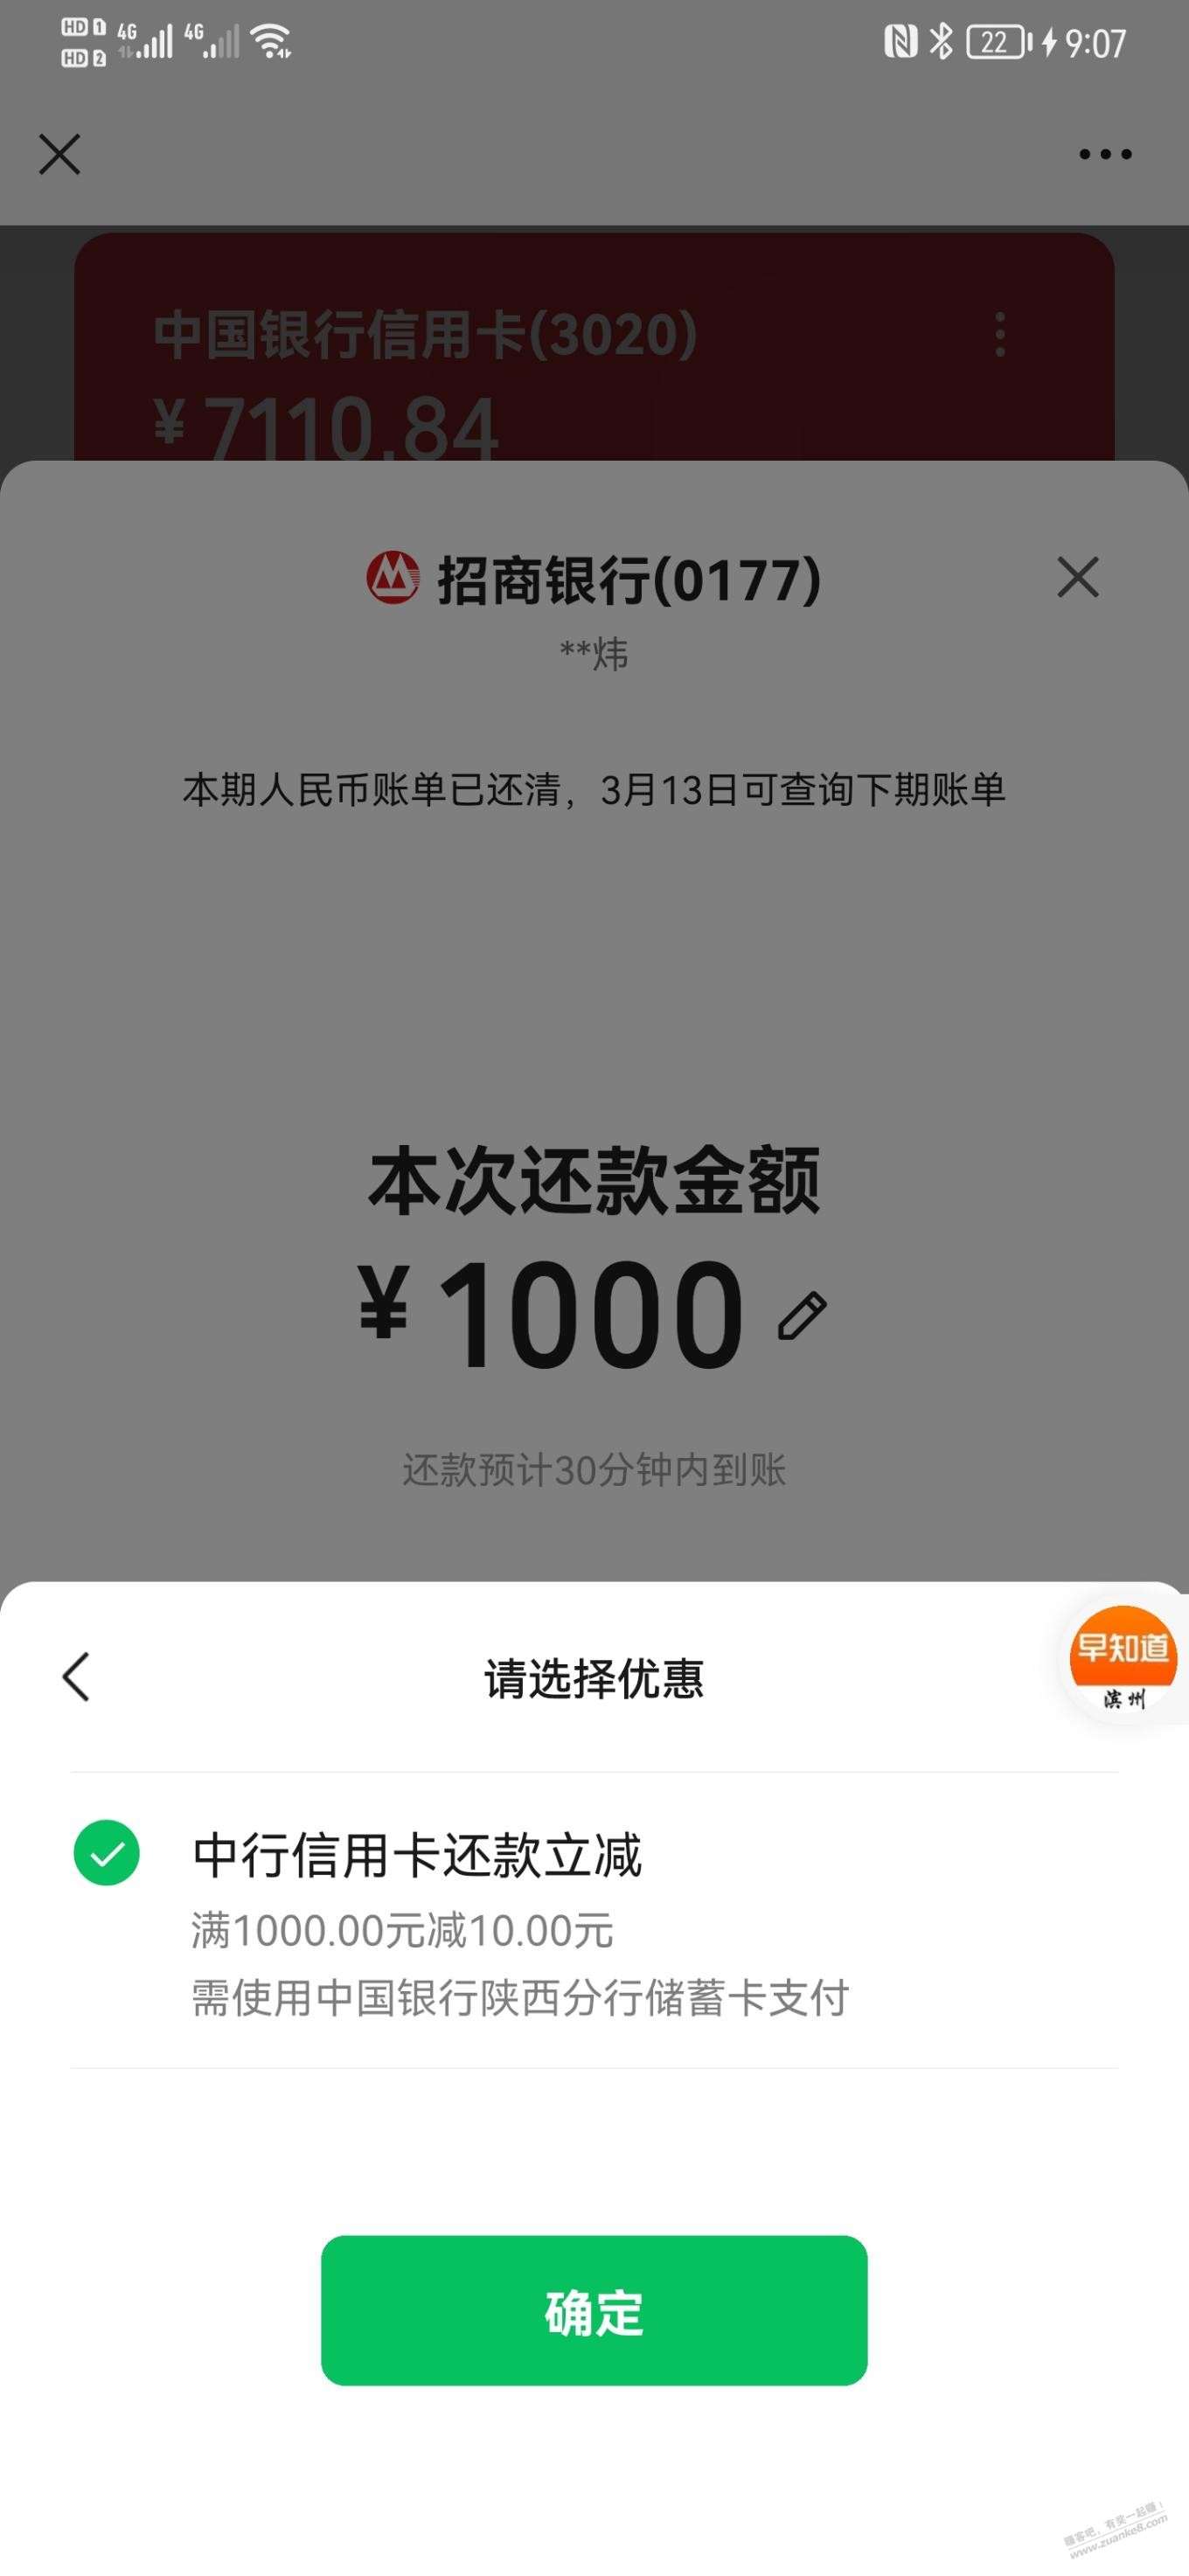 陕西中行还款1000-10-惠小助(52huixz.com)